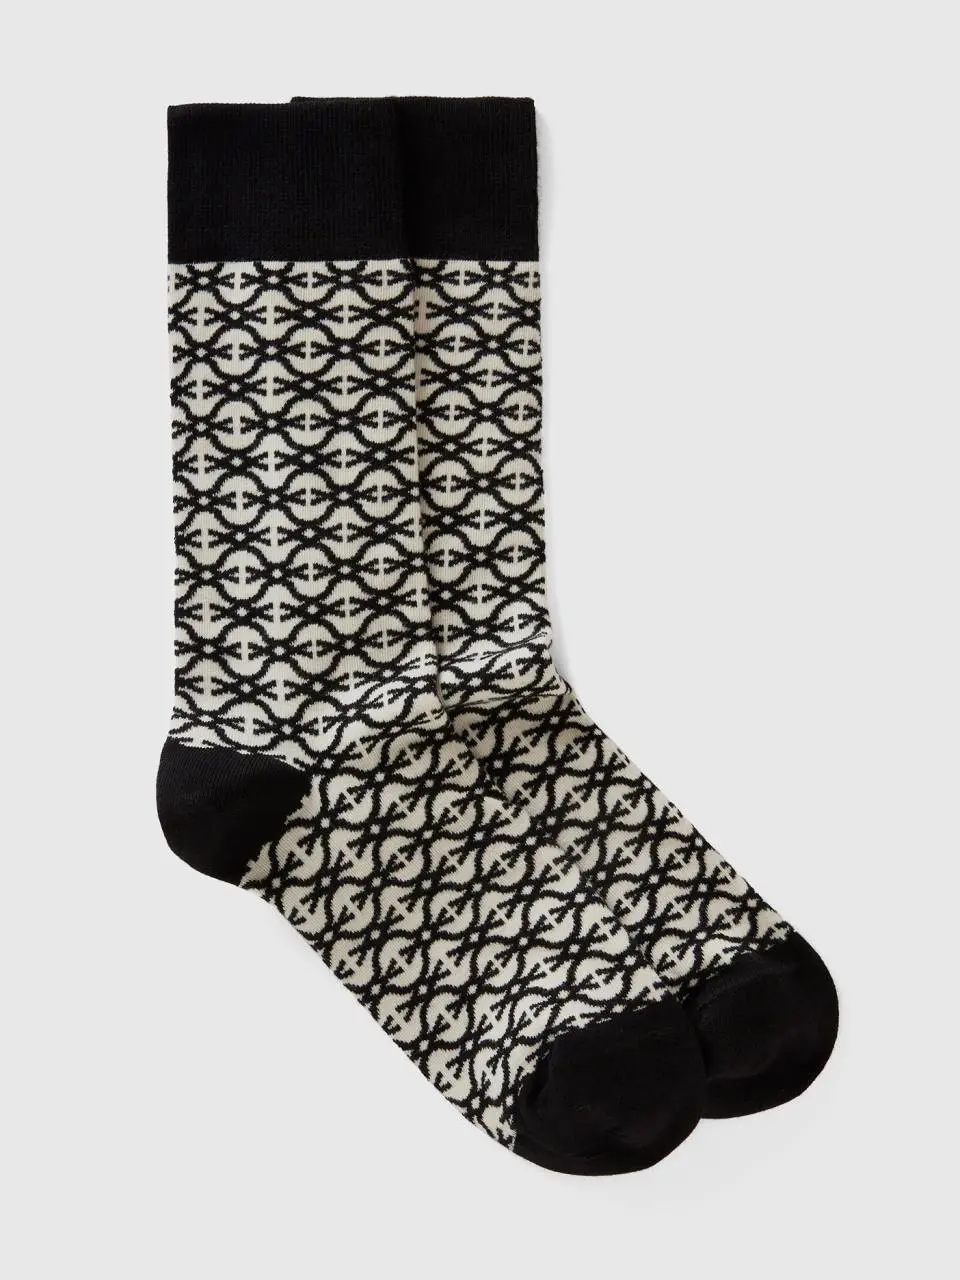 Benetton monogrammed black and white socks. 1